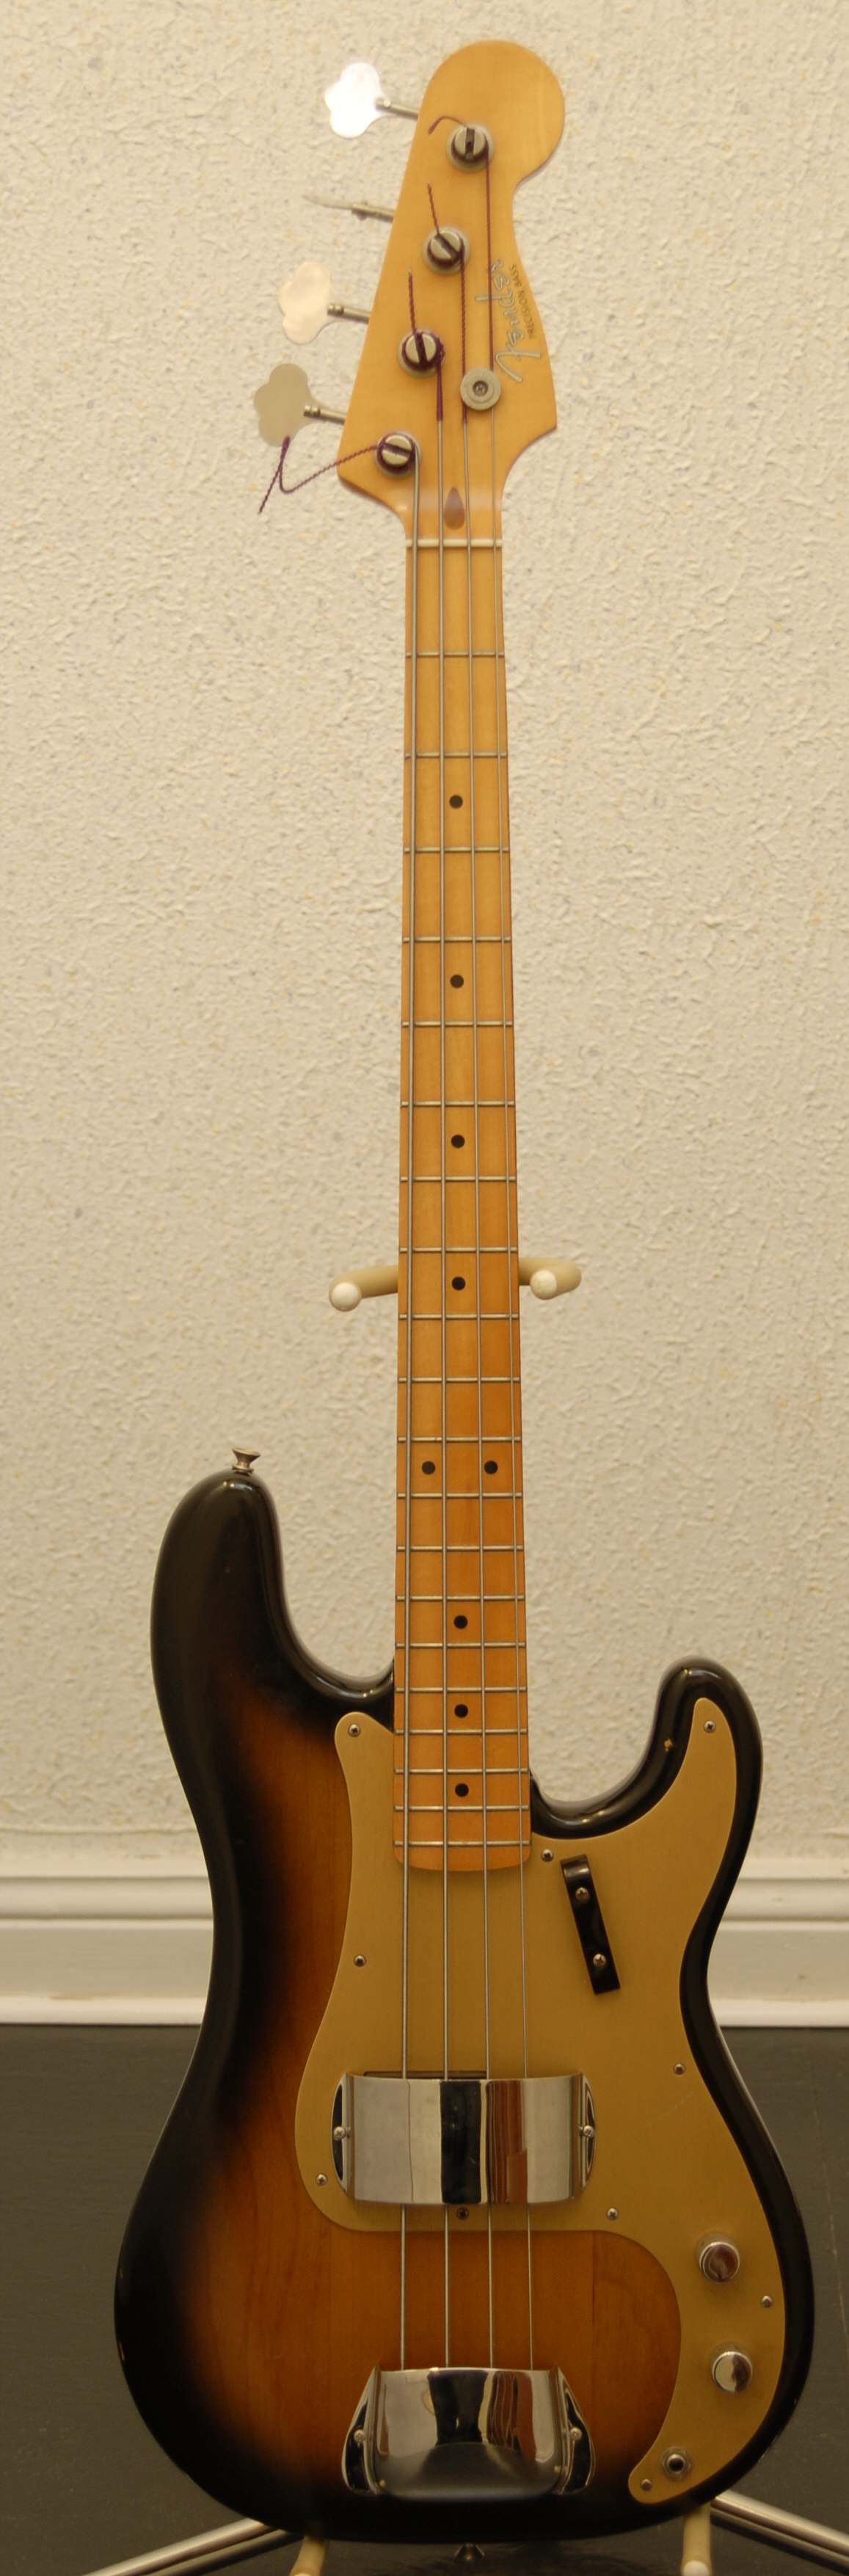 Fender-Precision-Bass-1957-Reissue.jpg